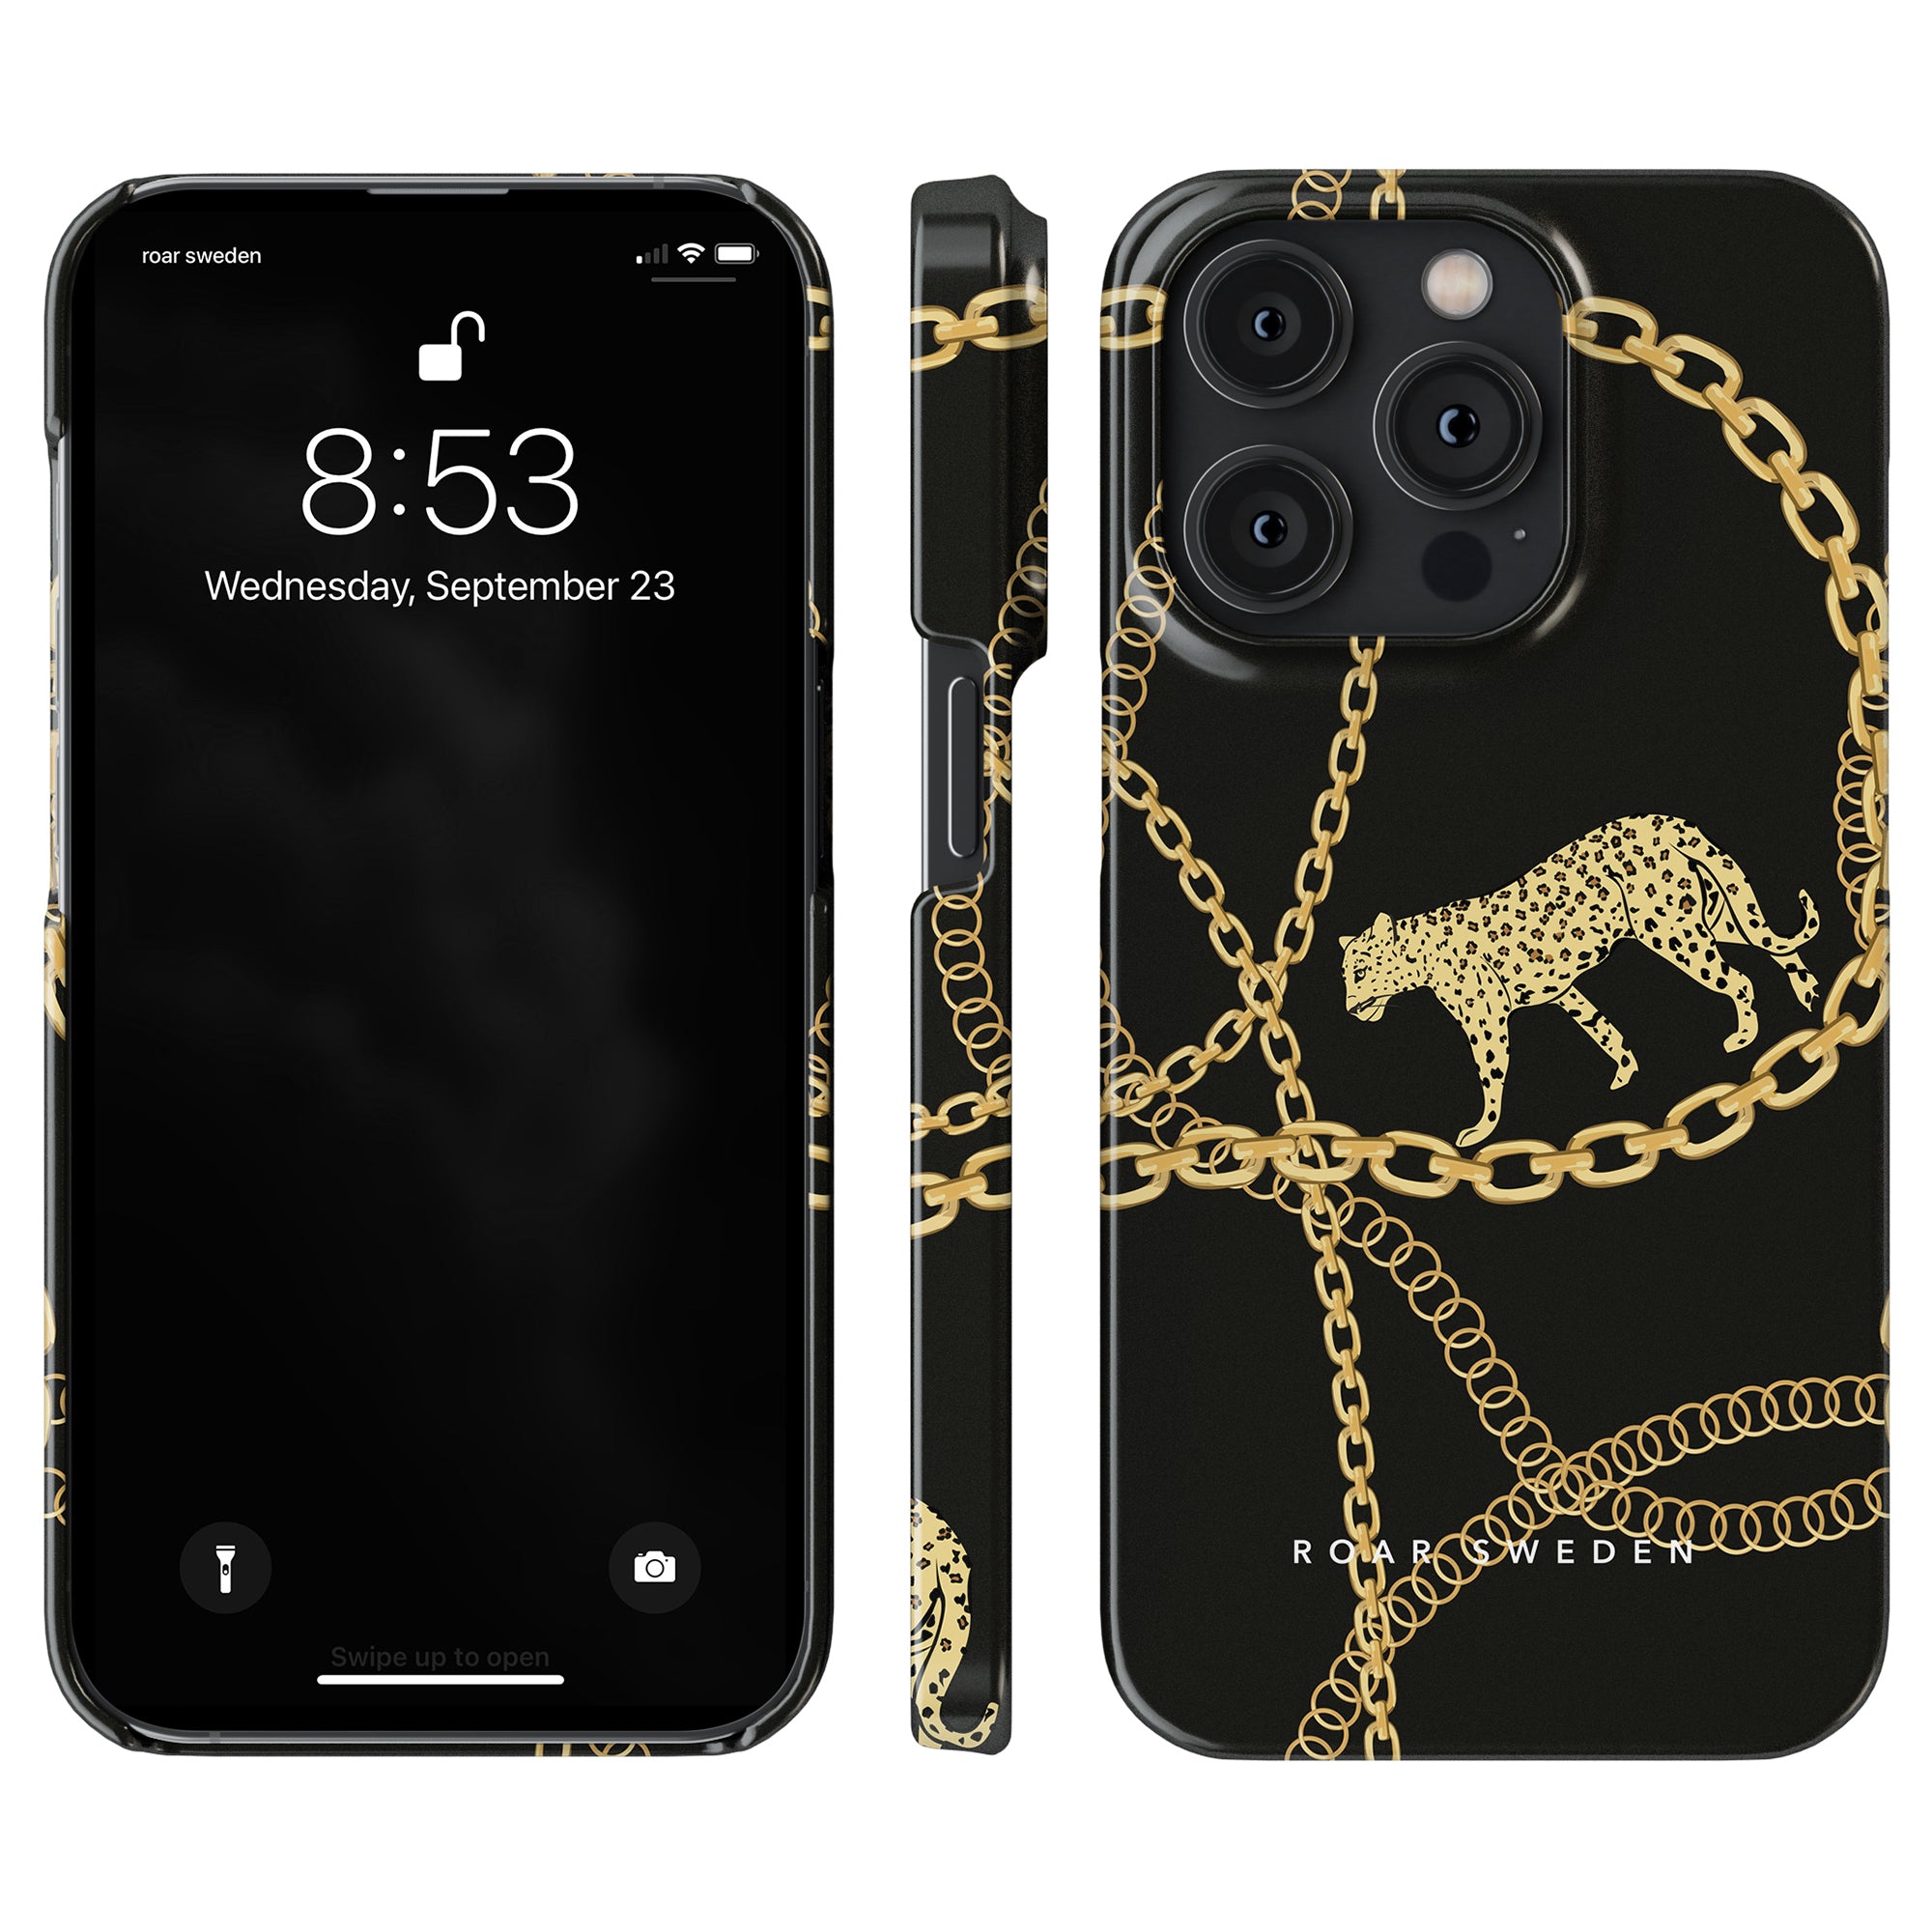 En svart och guldkedjor - Smal väska med leopardtryck. Lägger bara till ett av nyckelorden: mobilskal.